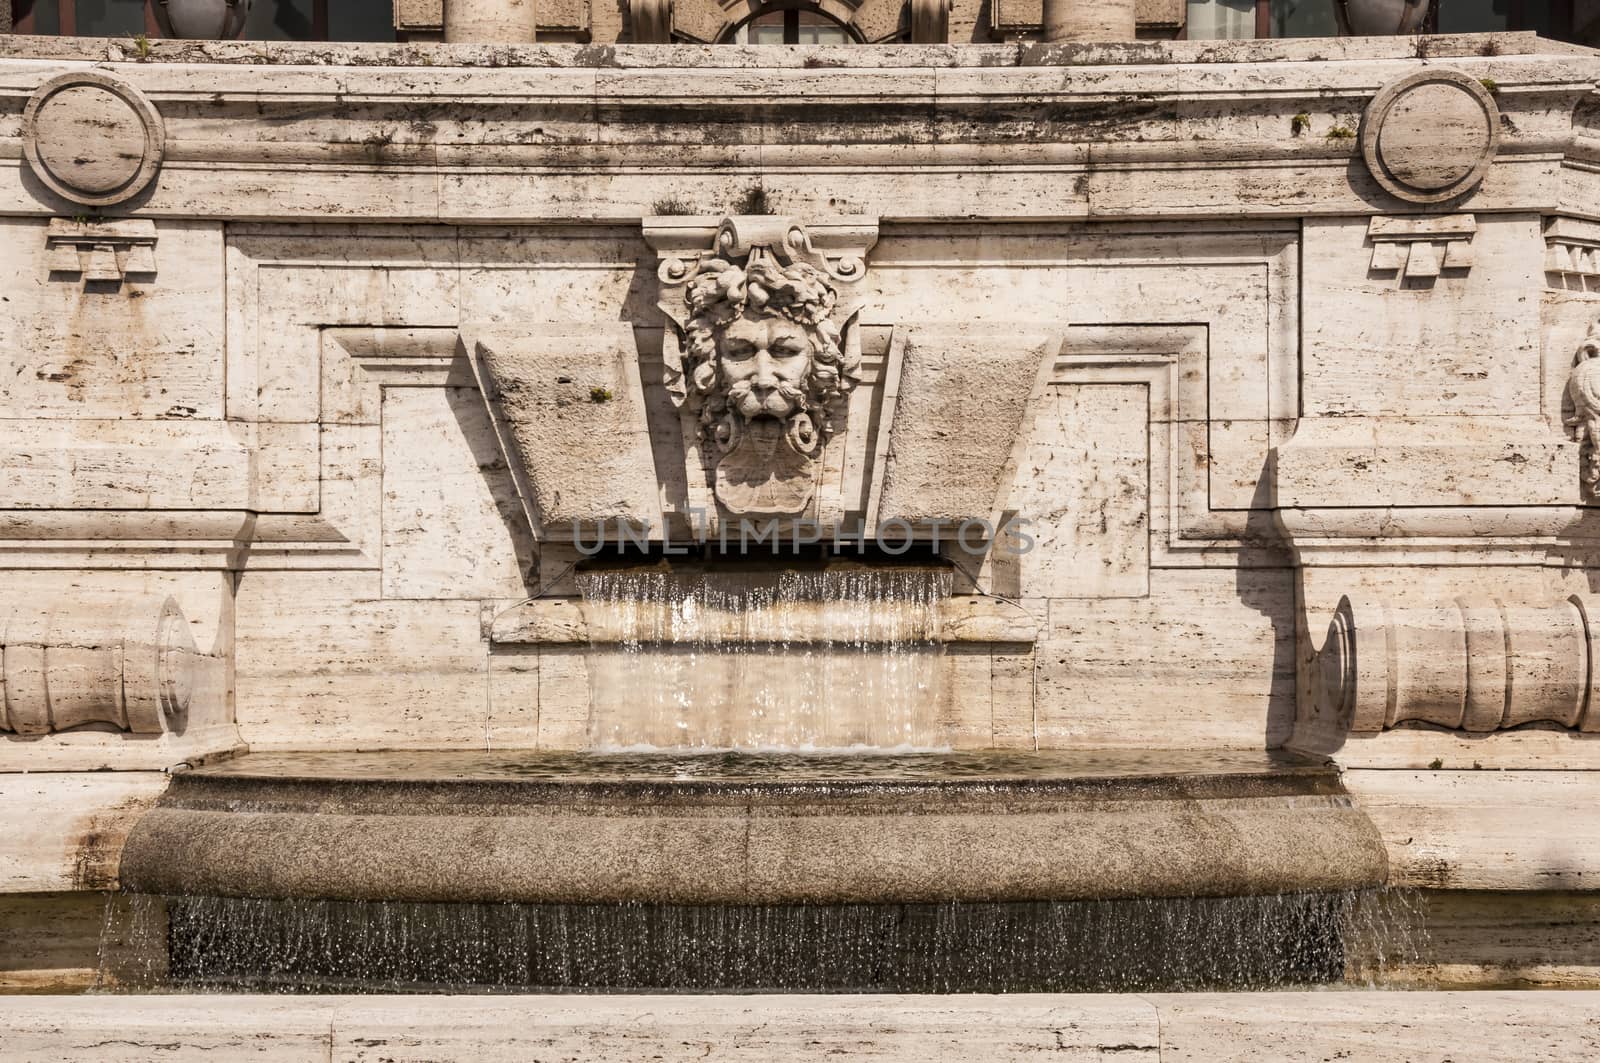 Architectural fragments of Palace of Justice Corte Suprema di Cassazione . Design by Perugia architect Guglielmo Calderini, built between 1888 and 1910. Rome, Italy.